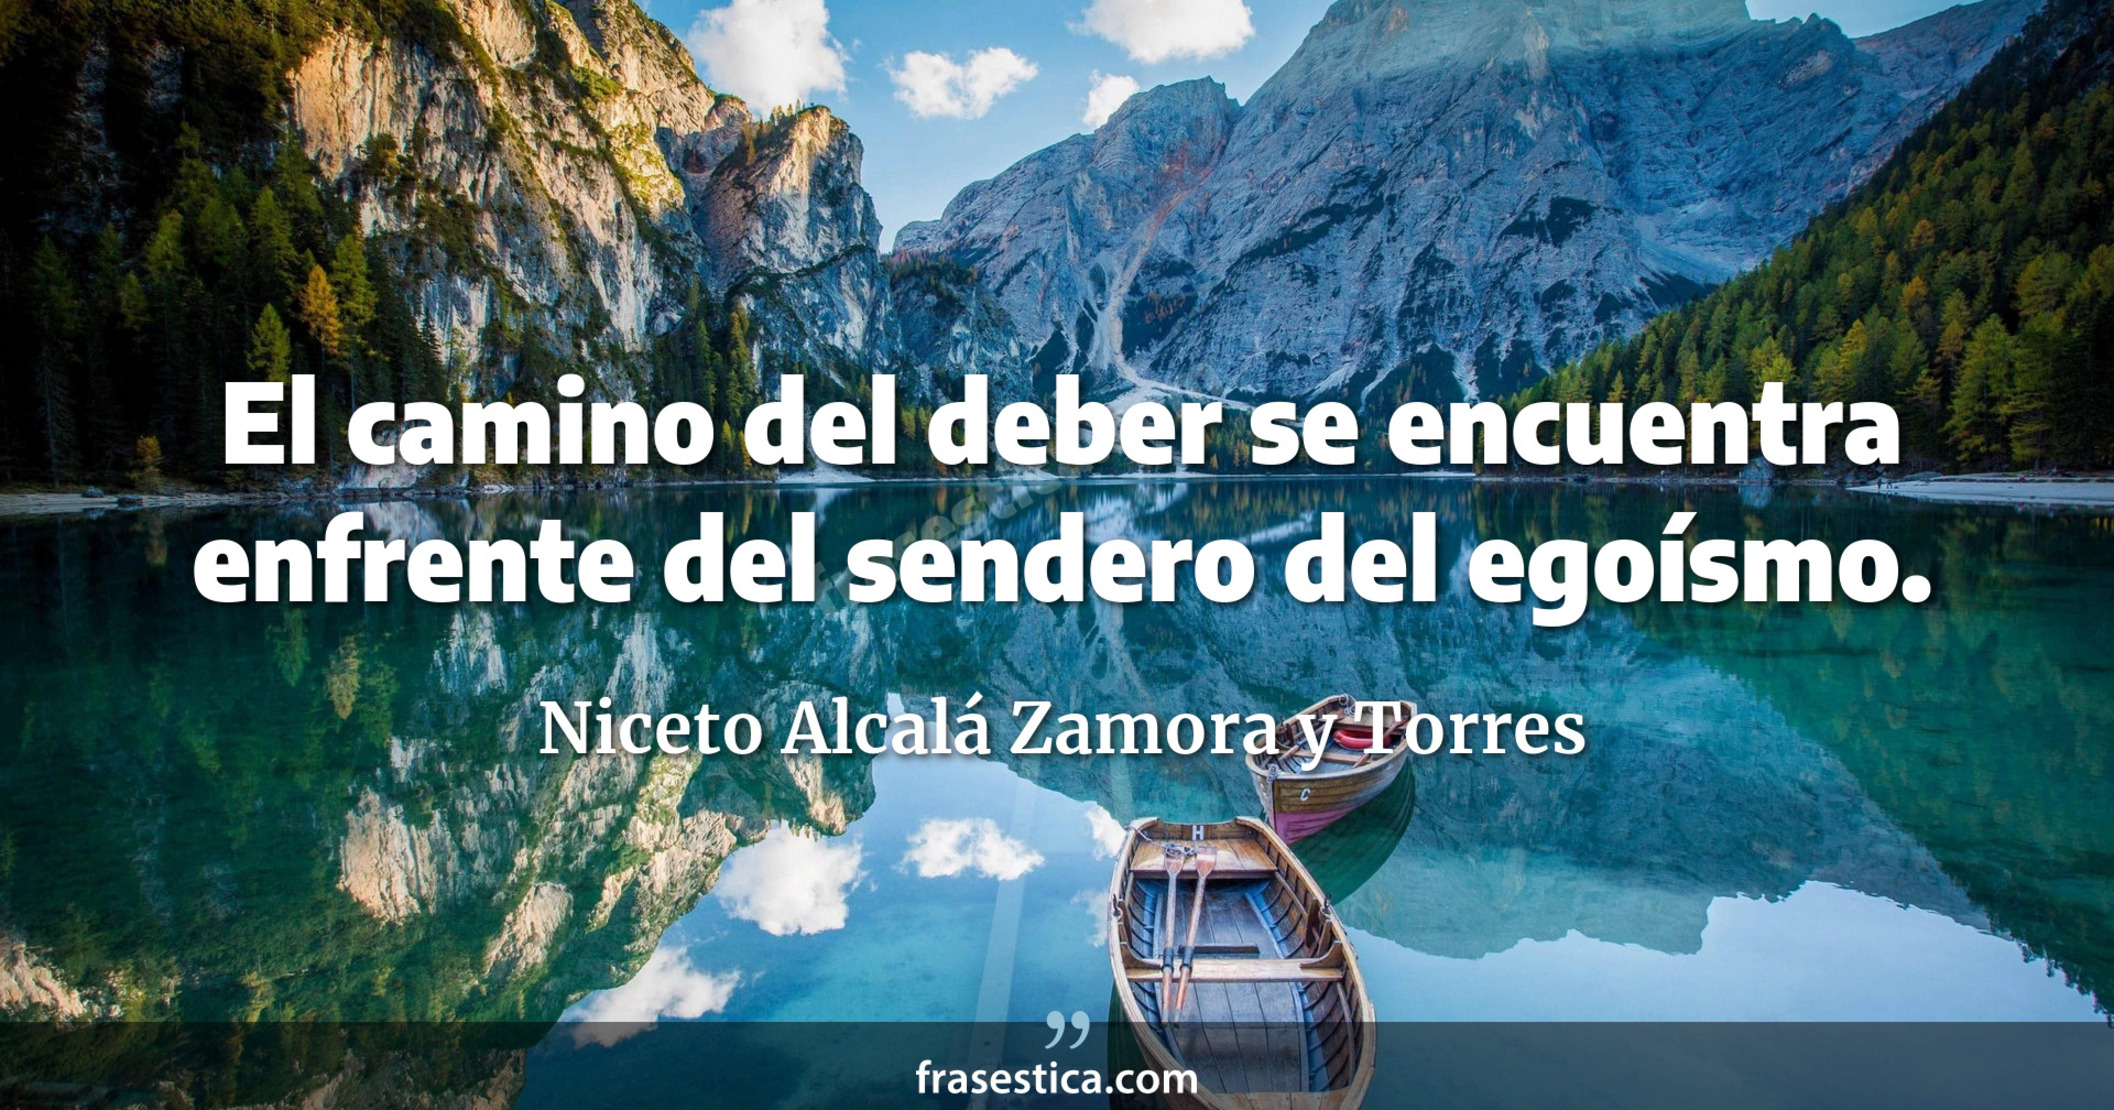 El camino del deber se encuentra enfrente del sendero del egoísmo. - Niceto Alcalá Zamora y Torres